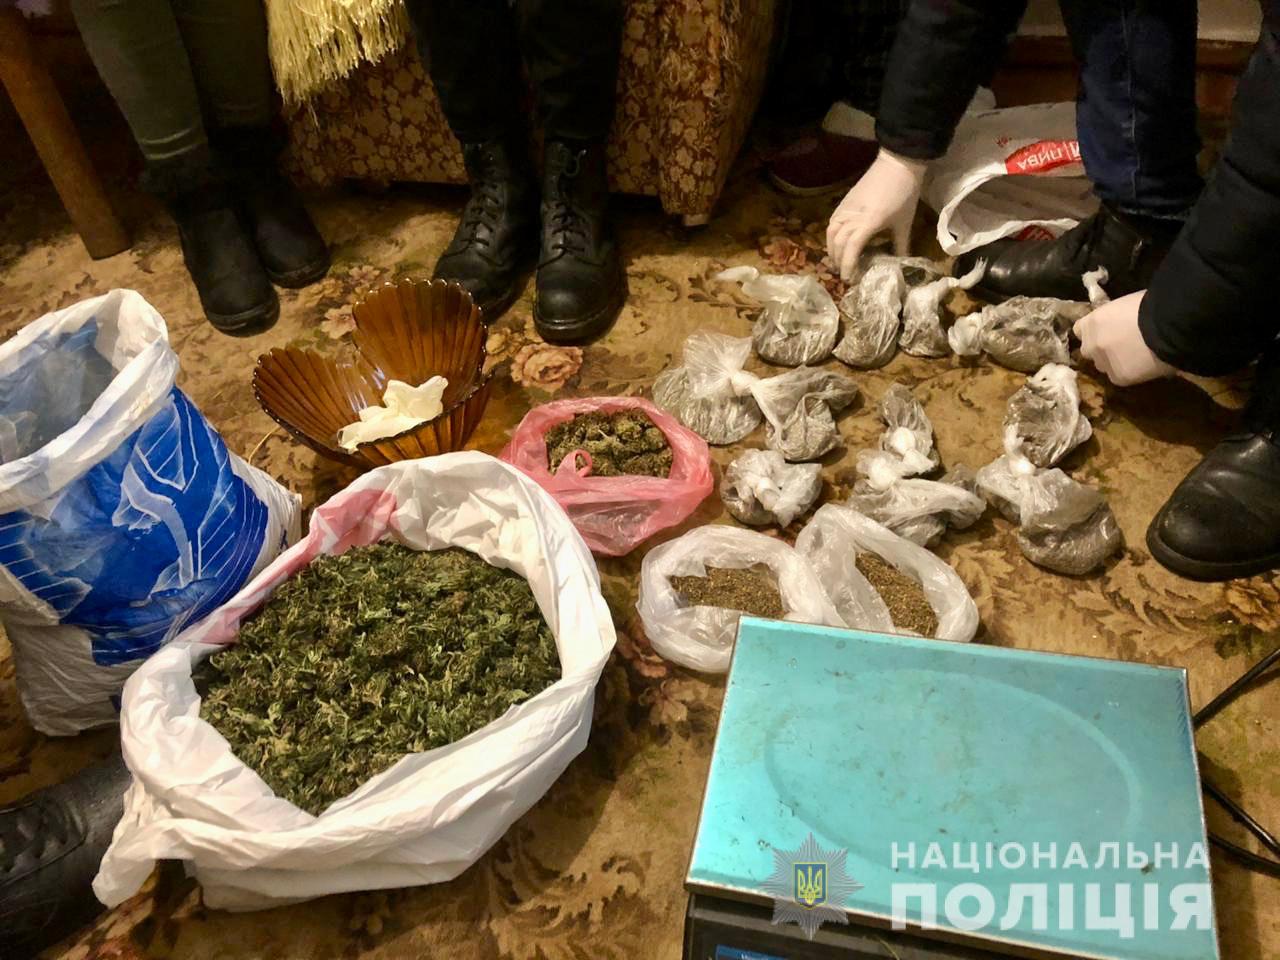 Наркотики на 1 миллион гривен: задержана наркогруппировка. Новости Днепра